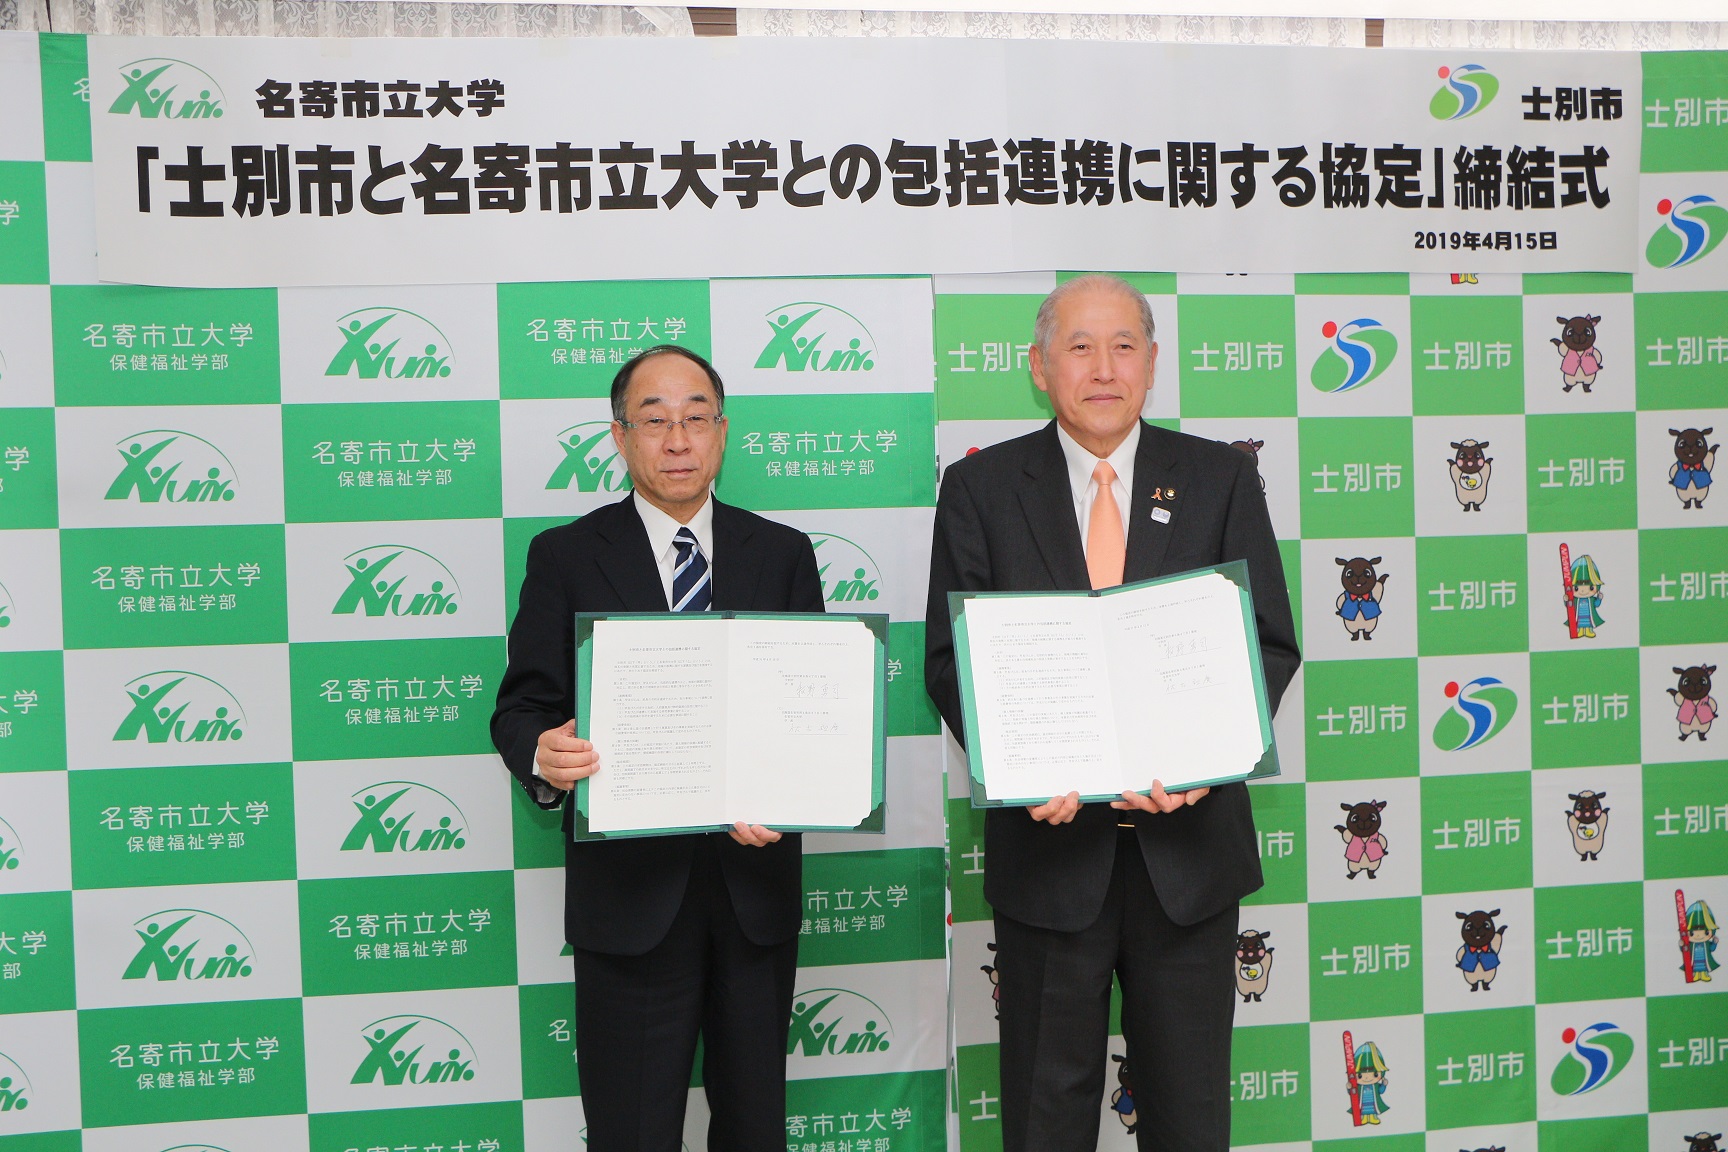 市長と名寄市立大学の代表の男性が包括連携協定書を持って撮影した記念写真